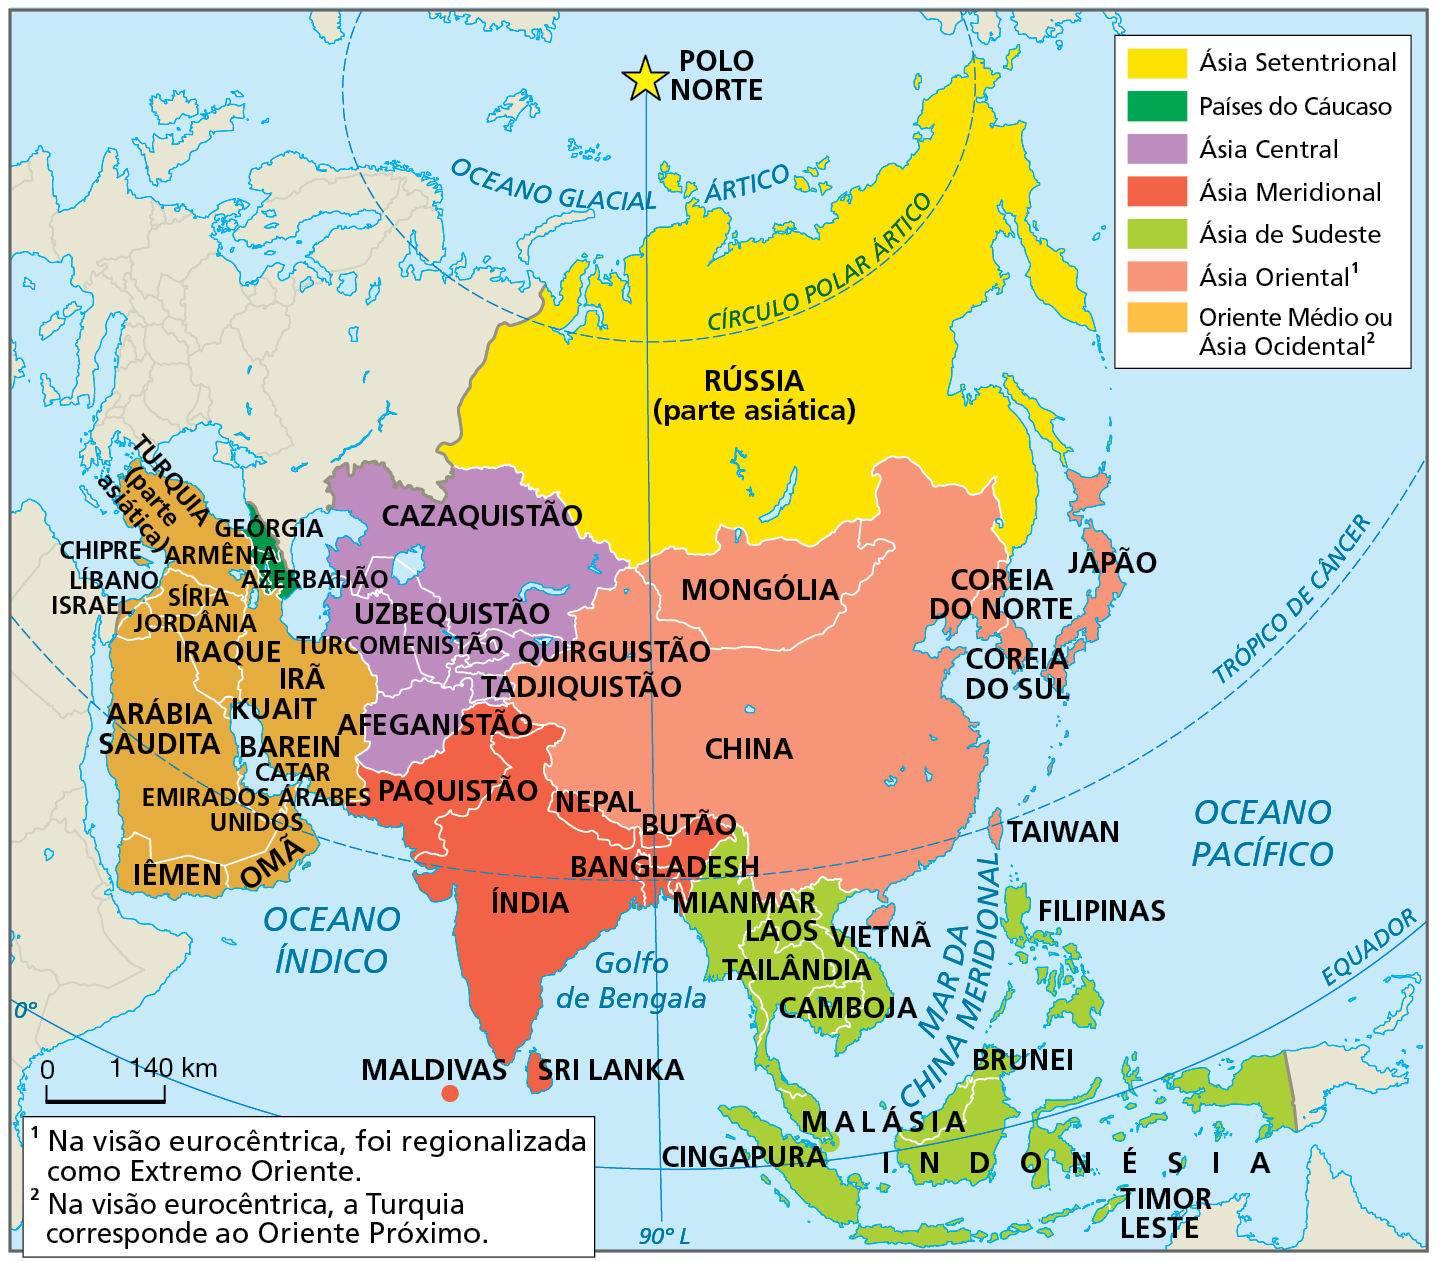 Mapa. Ásia: regionalização com base na localização dos países, 2021. Mapa representando regiões no continente asiático com base na localização, distinguindo cada região por cor nos países.
Ásia Setentrional, em amarelo: Rússia (parte asiática).
Países do Cáucaso, em verde-escuro: Geórgia, Armênia e Azerbaijão.
Ásia Central, em lilás: Cazaquistão, Uzbequistão, Turcomenistão, Afeganistão, Quirguistão e Tadjiquistão.
Ásia Meridional, em vermelho: Índia, Bangladesh, Paquistão, Sri Lanka, Maldivas, Nepal e Butão. 
Ásia de Sudeste, em verde-claro: Mianmar, Vietnã, Camboja, Cingapura, Brunei, Malásia, Indonésia, Filipinas, Laos, Tailândia e Timor Leste. 
Ásia Oriental, na cor salmão. Na visão eurocêntrica, foi regionalizada como Extremo Oriente. Mongólia, China, Coreia do Norte, Japão, Coreia do Sul. 
Oriente Médio ou Ásia Ocidental, na cor laranja. Na visão eurocêntrica, a Turquia corresponde ao Oriente Próximo. Turquia (parte asiática), Chipre, Jordânia, Kuait, Irã, Emirados Árabes Unidos, Barein, Iêmen, Omã, Arábia Saudita, Israel, Líbano, Irã, Iraque, Síria e Catar.
Na parte inferior, escala de 0 a 1.140 quilômetros.